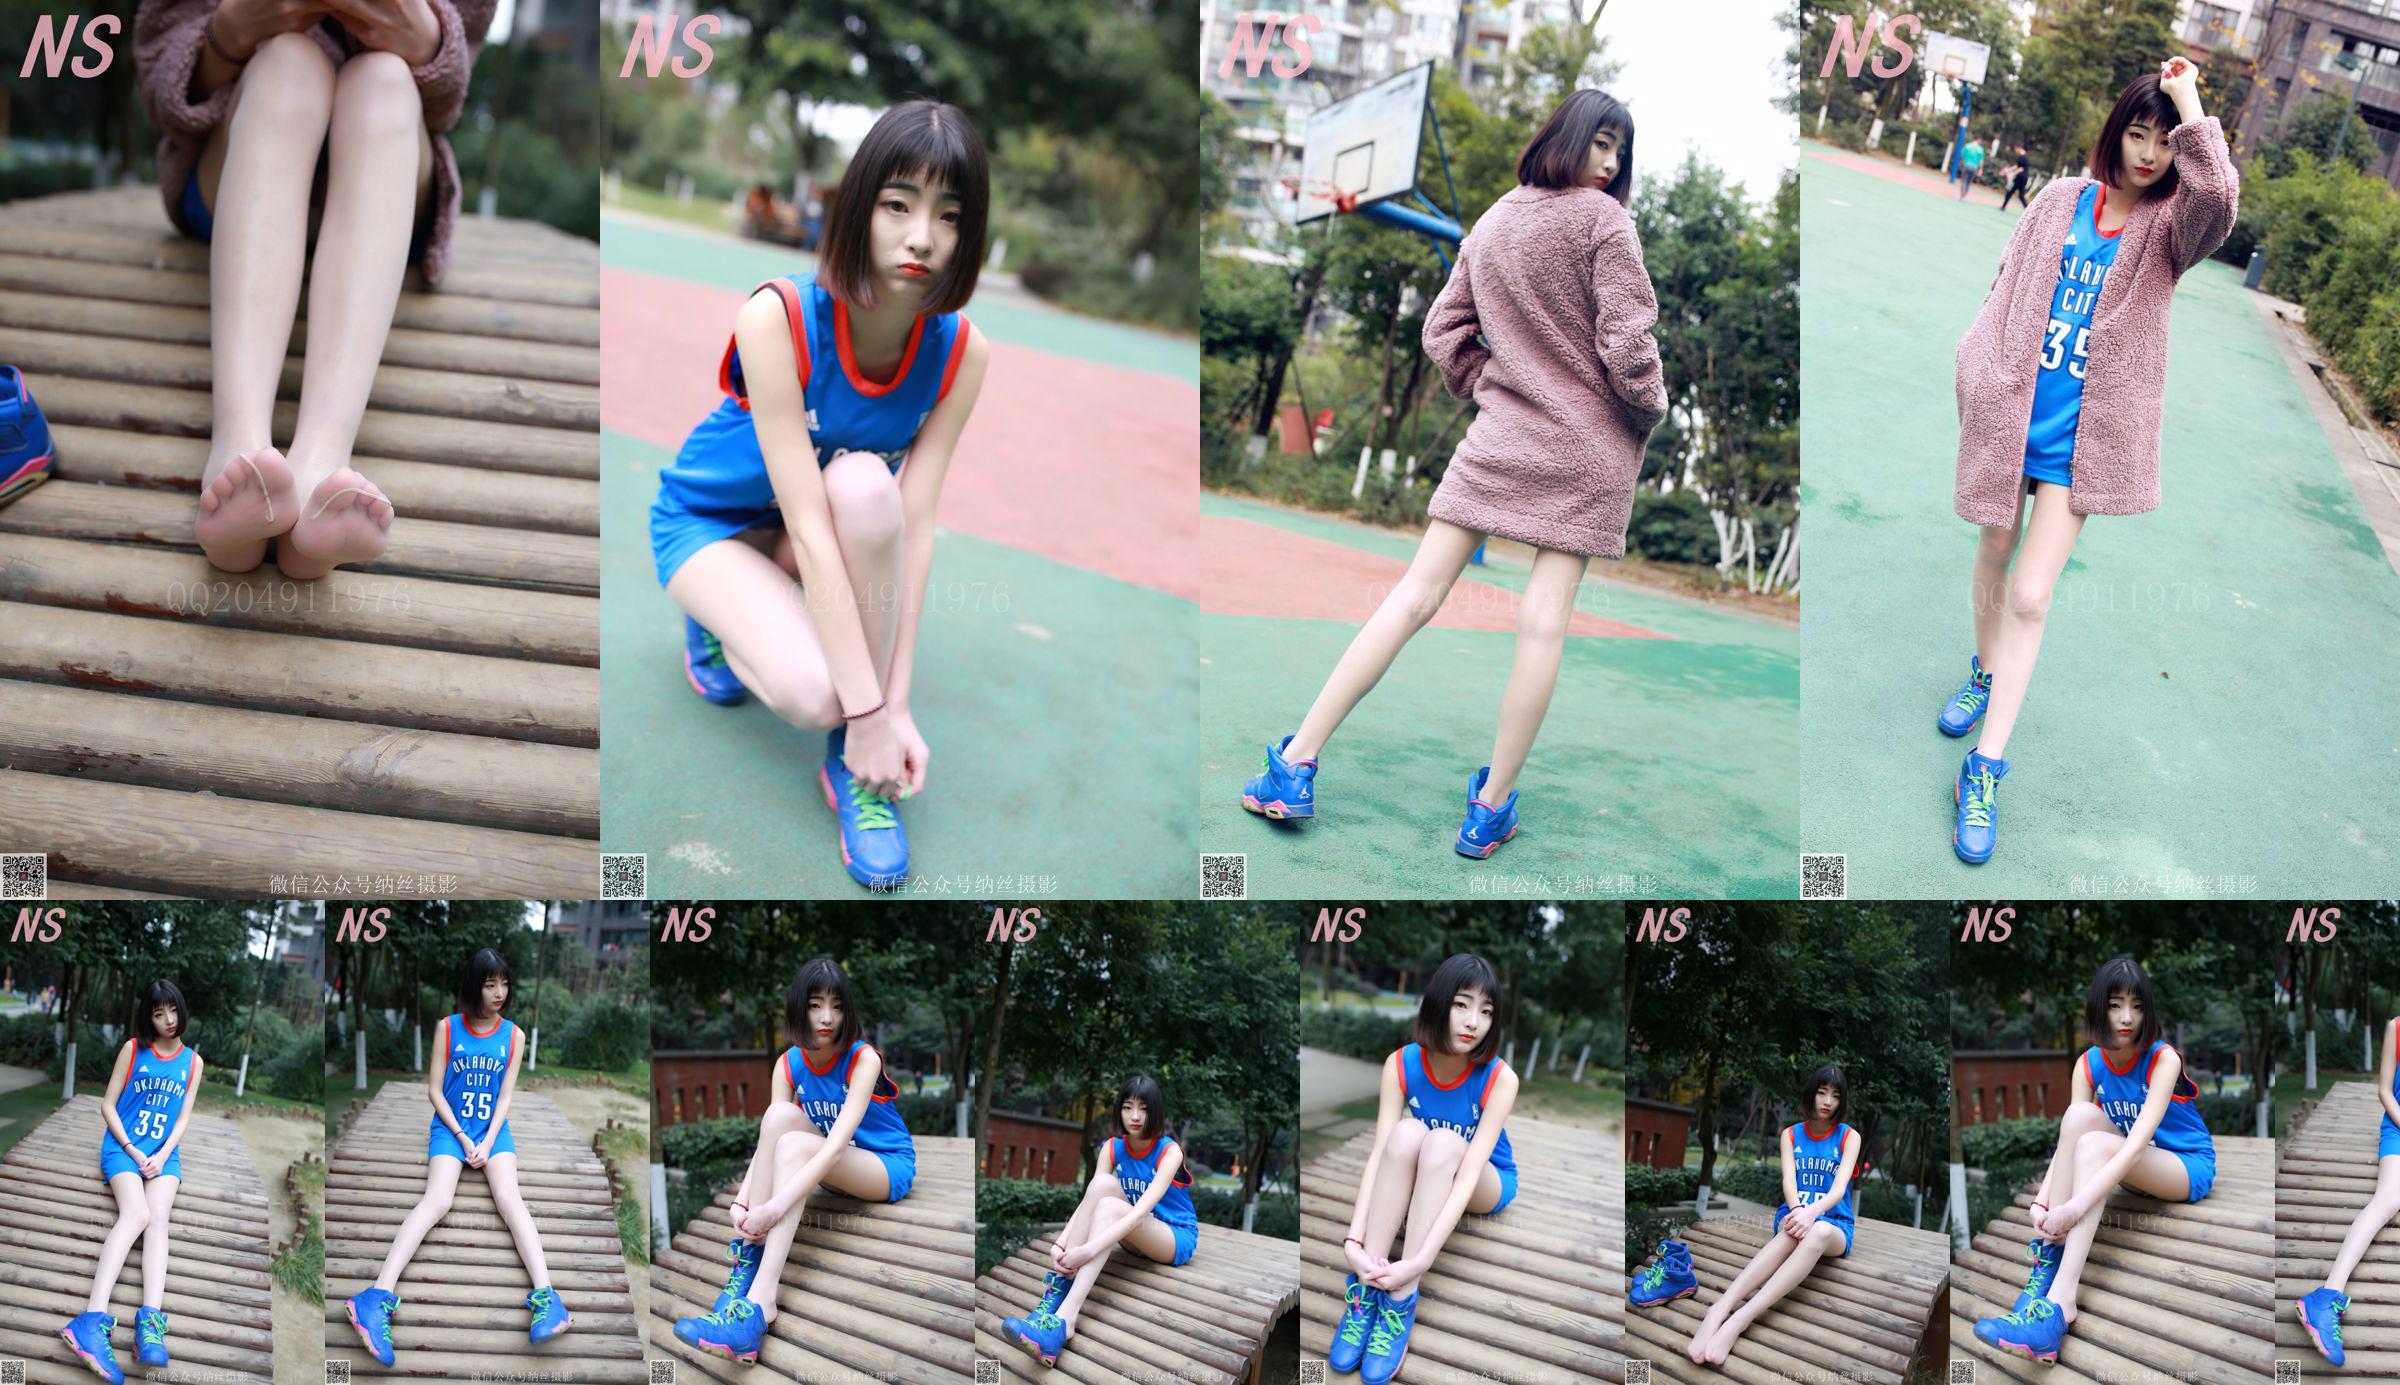 Chen Yujie "Basketball Girl" [Nasi Photography] N ° 107 No.4bf057 Page 1